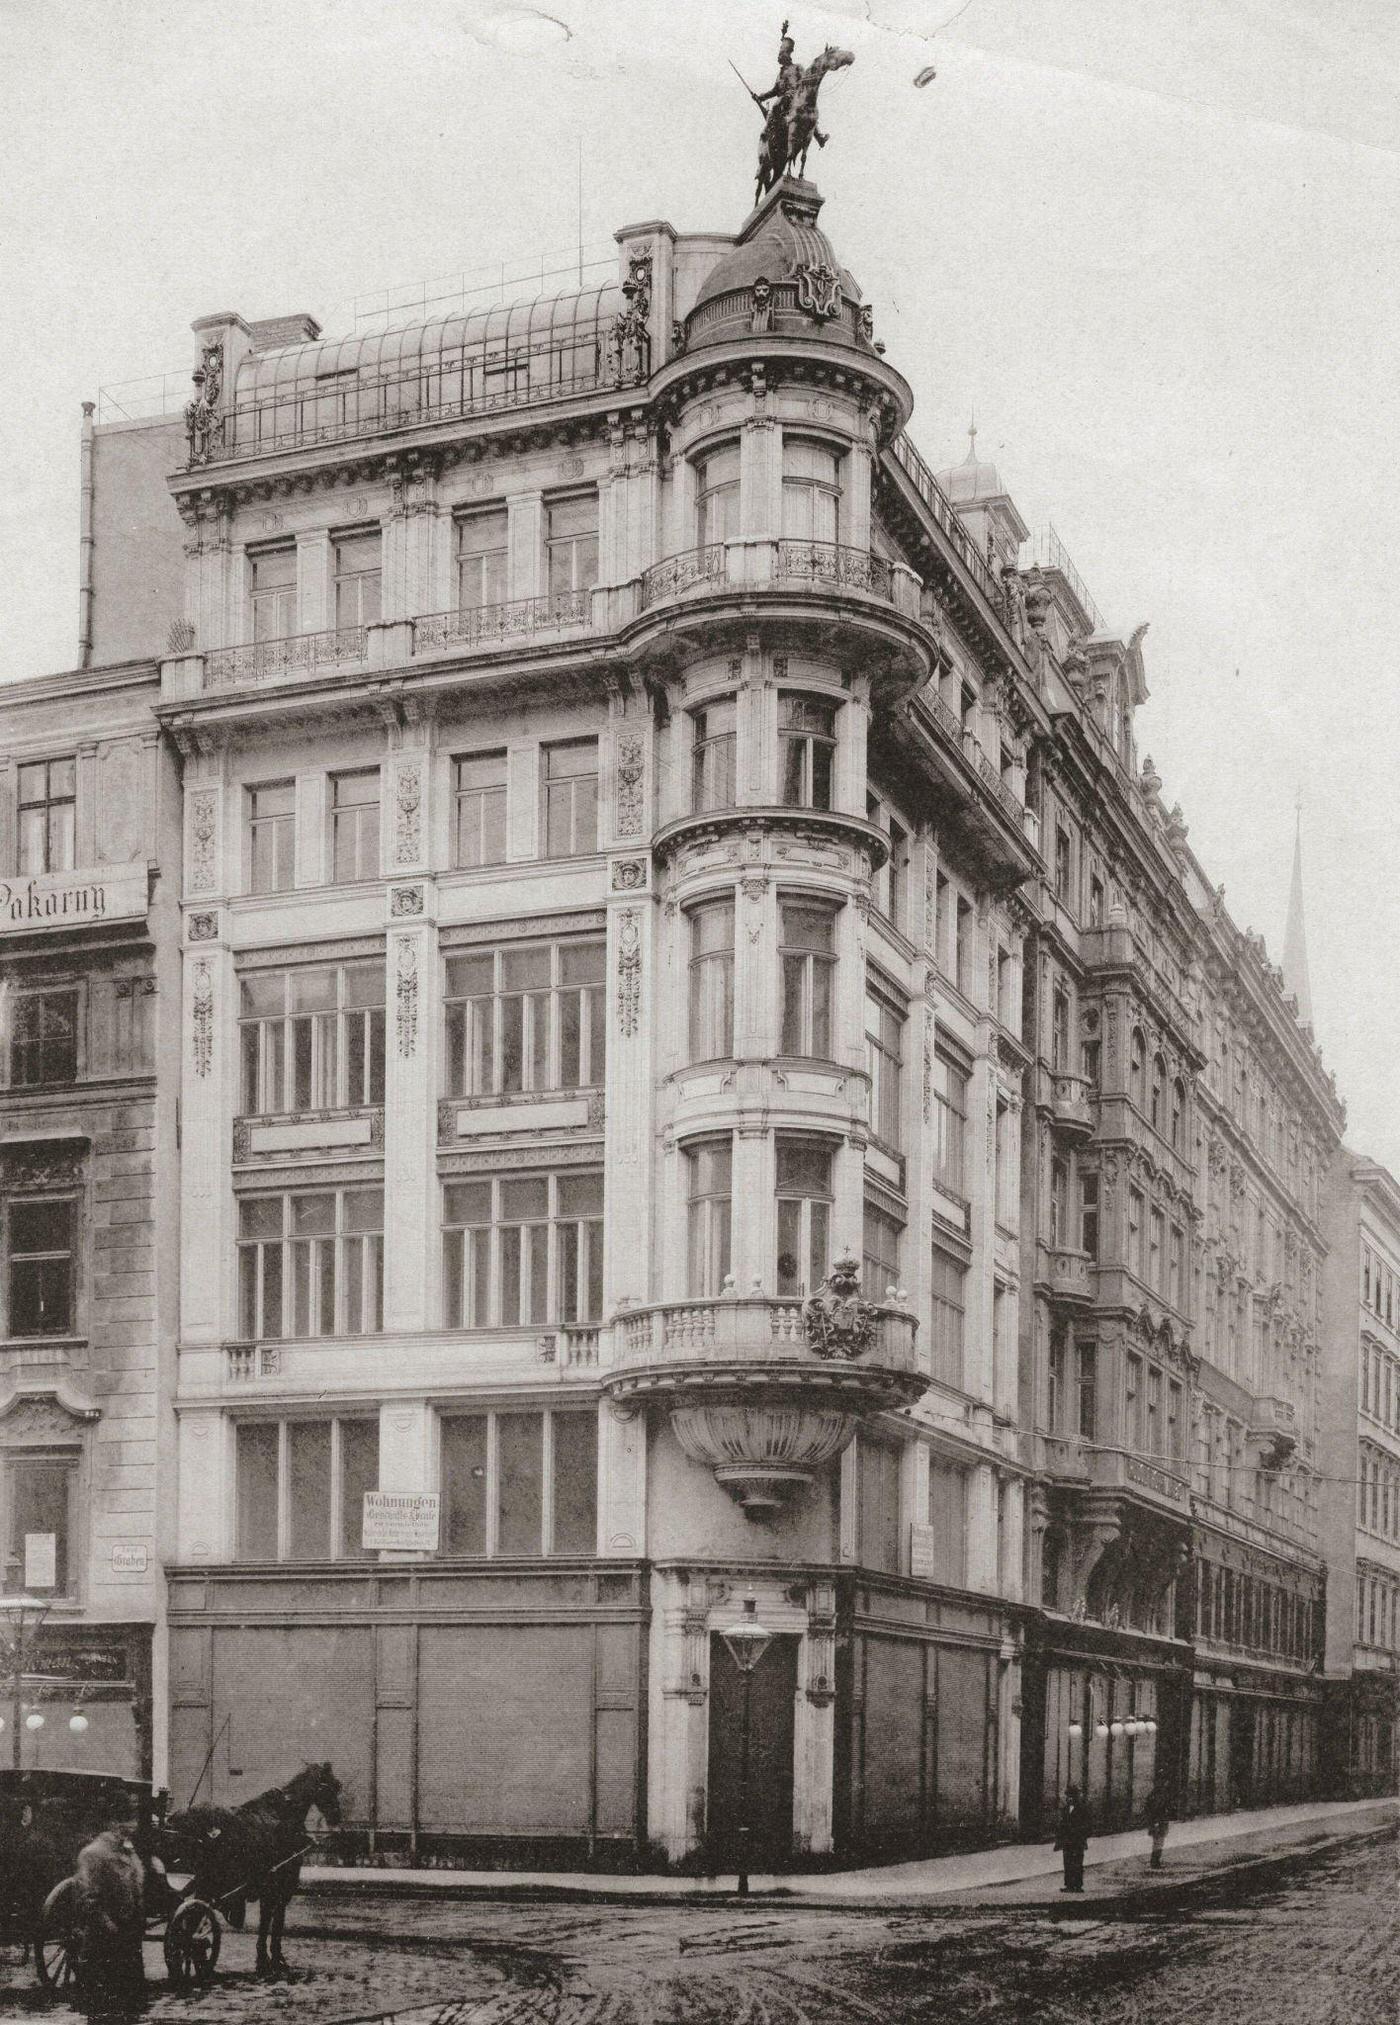 Corner between Kohlmarkt and Graben, 1905